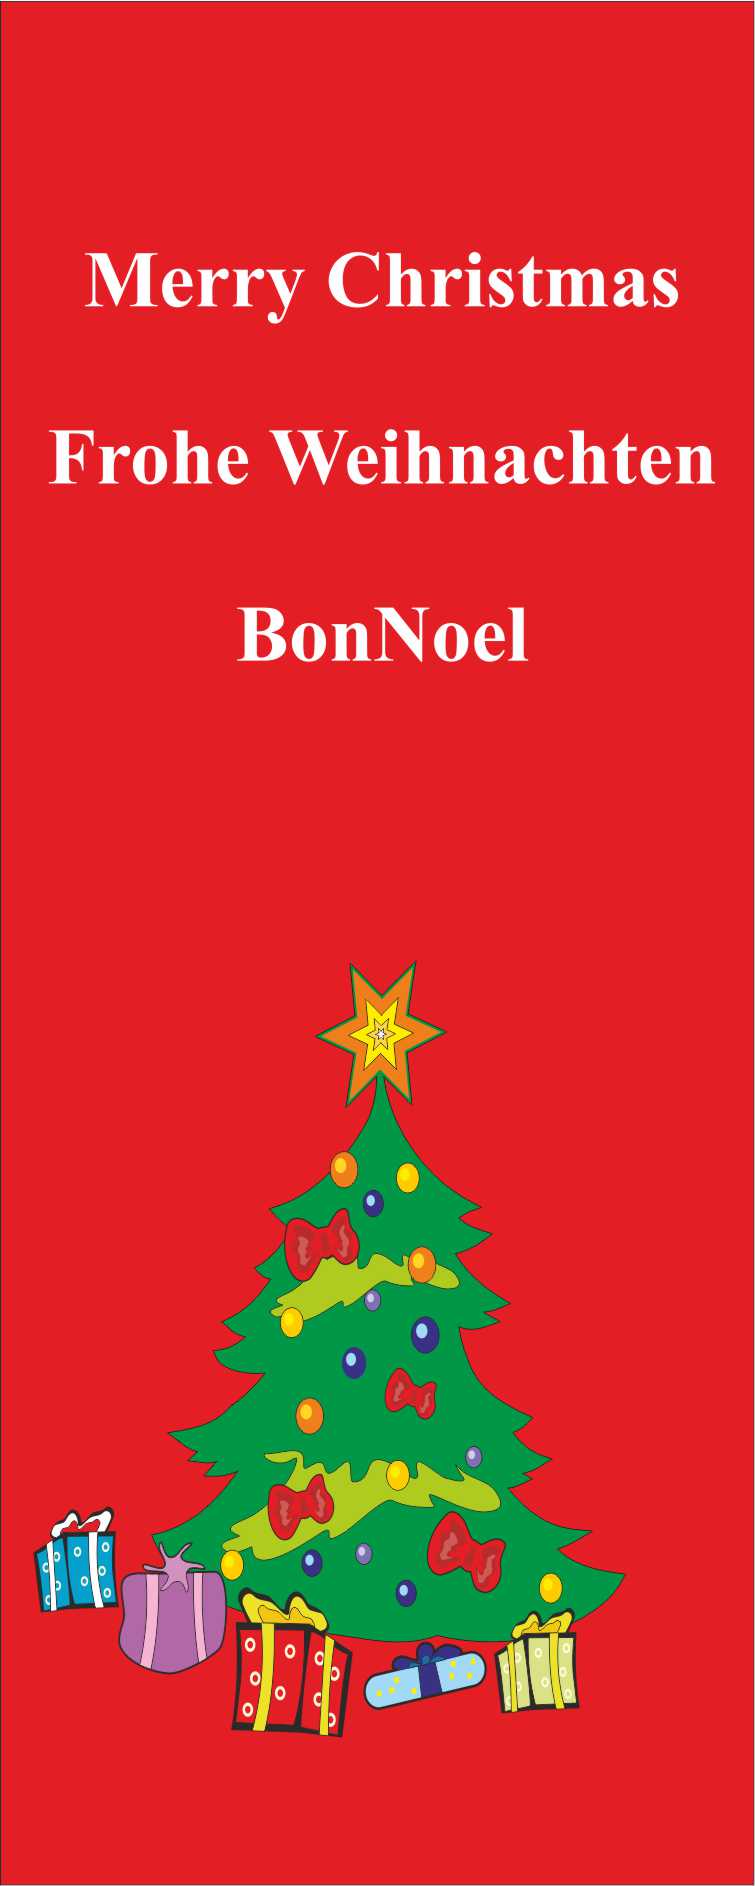 Flagge Frohe Weihnachten Tanne rotgrundig 300 x 120 cm